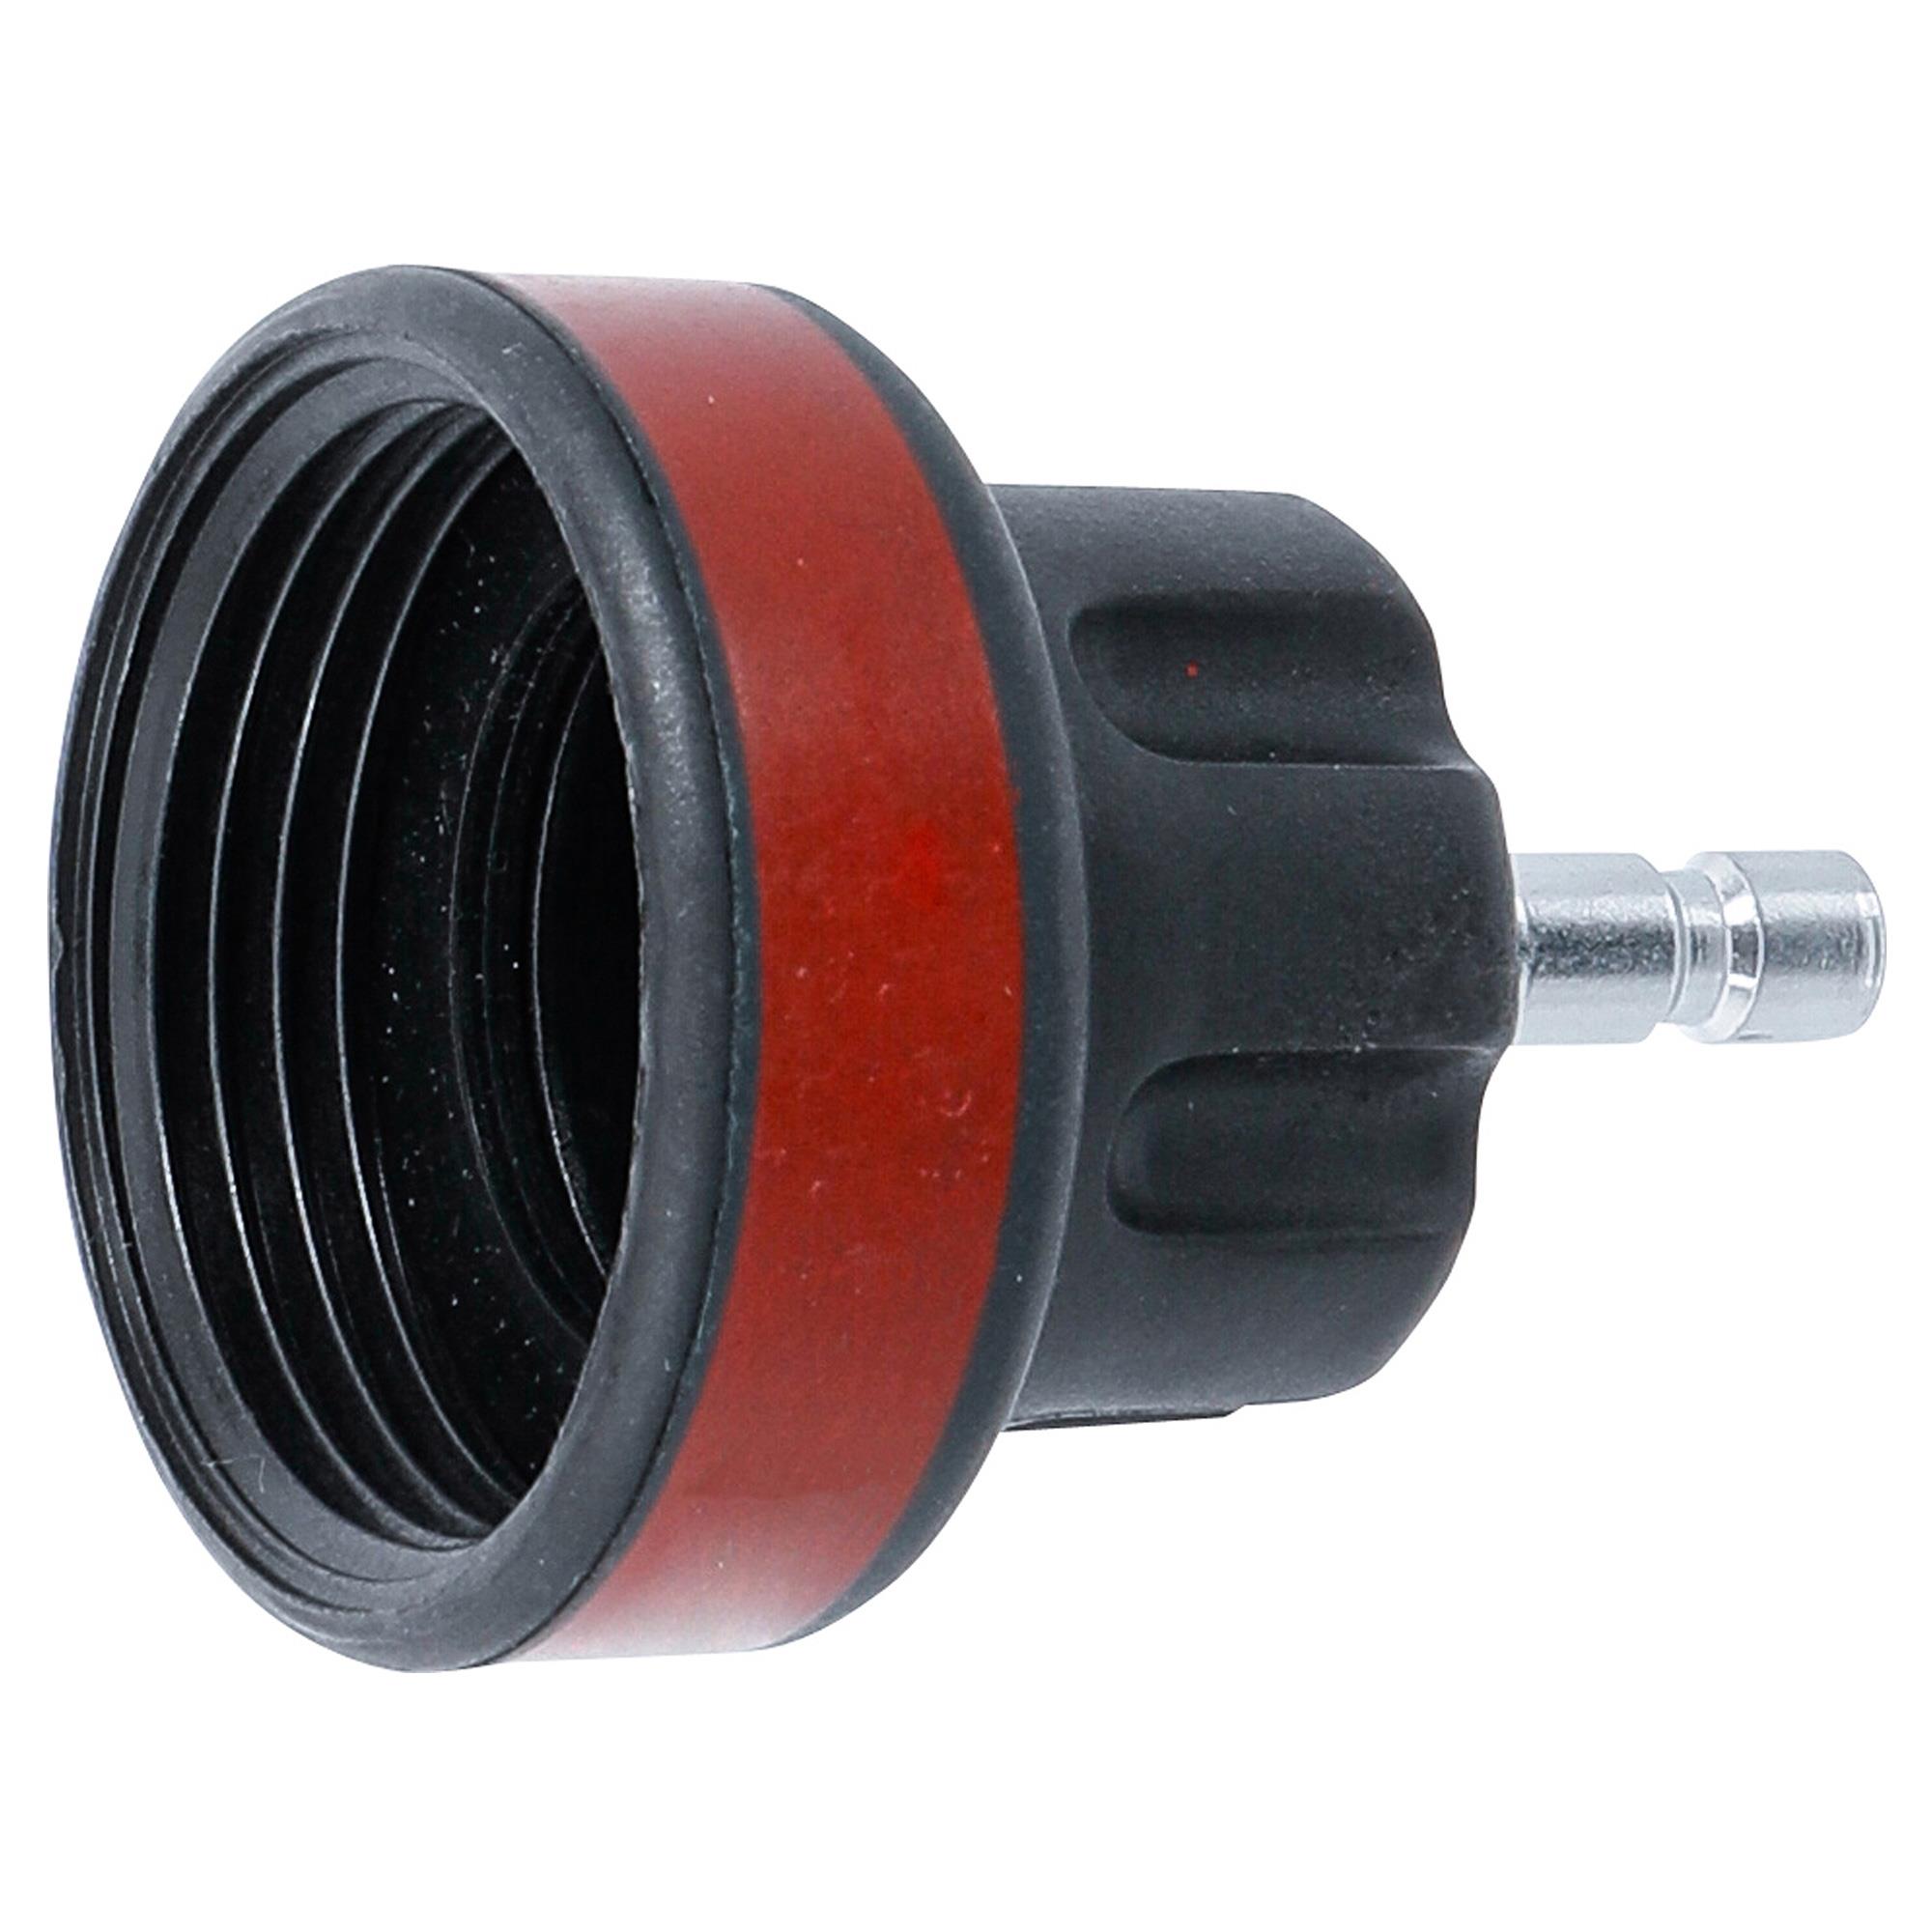 Einfüllpumpe für Getriebeöl Bremsflüssigkeit Handpumpe Pumpe Ölpumpe 1Liter  - , 22,99 €